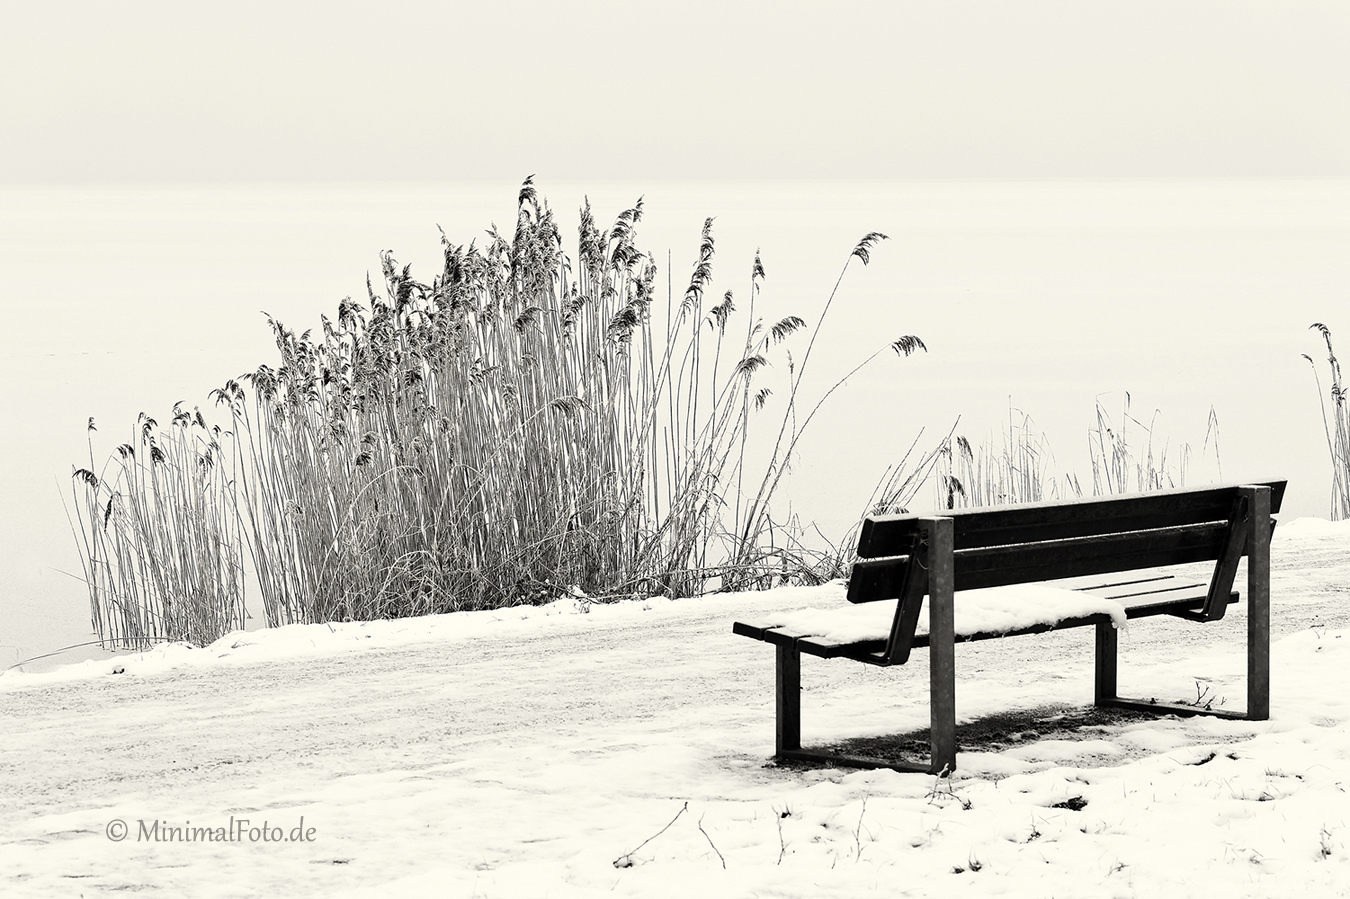 Bank-bench-Schilf-reed-roehricht-winter-Minimalismus-minimalistisch-minimalistic-black-white-schwarz-weiss-B_SAM0471-sw